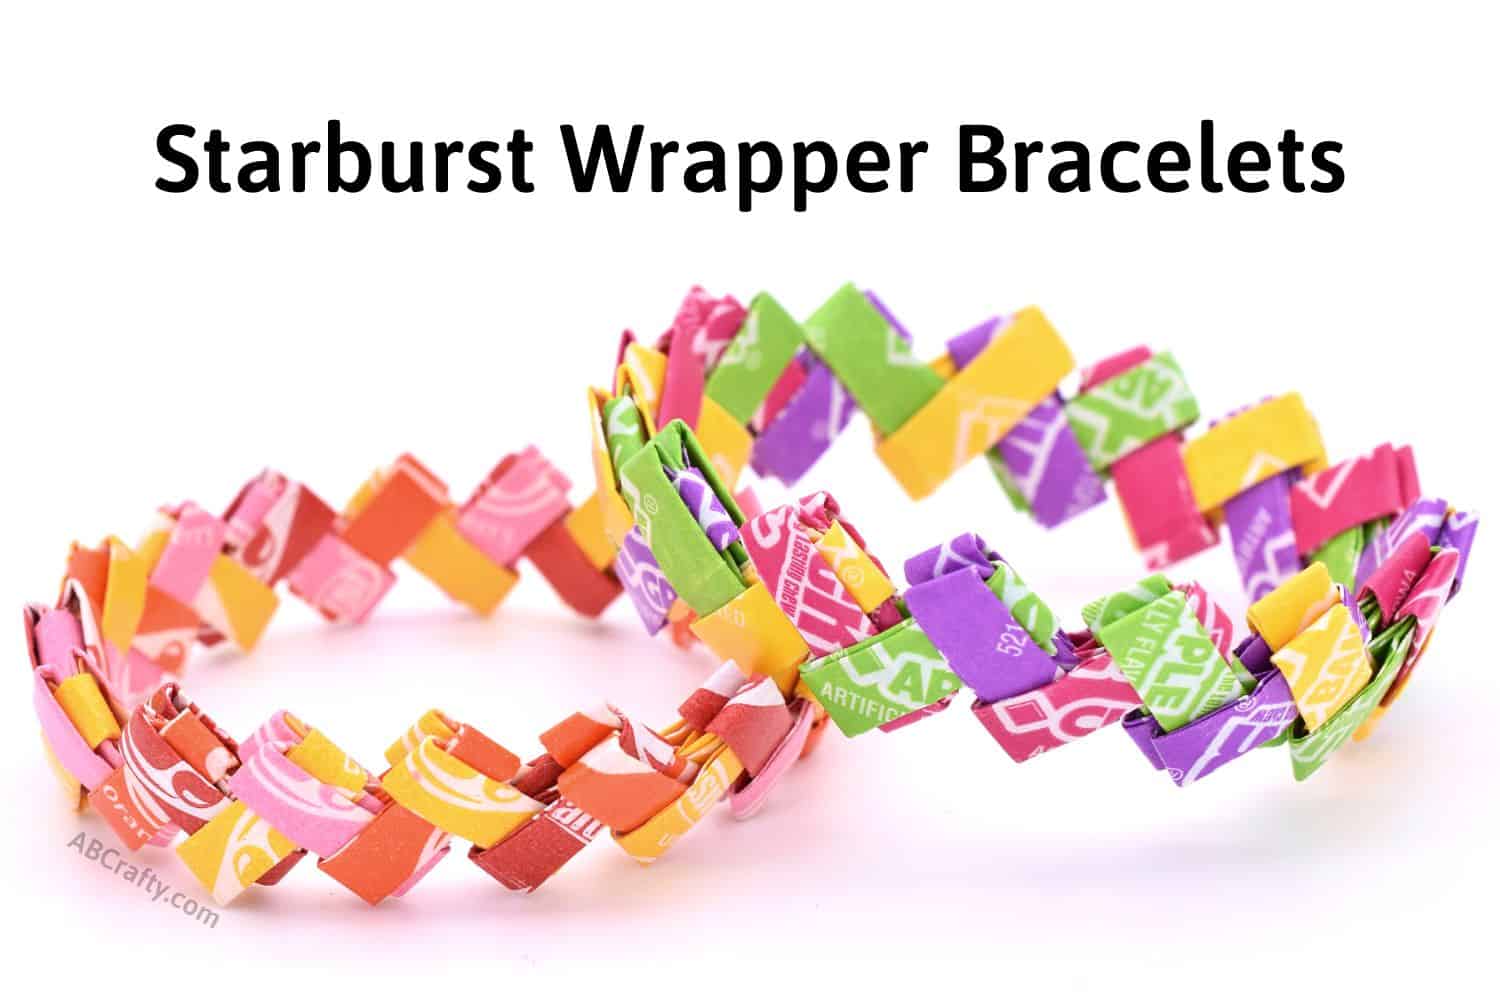 finished starburst wrapper bracelet and a candy wrapper bracelet made with now and later wrappers with the title "starburst wrapper bracelets"